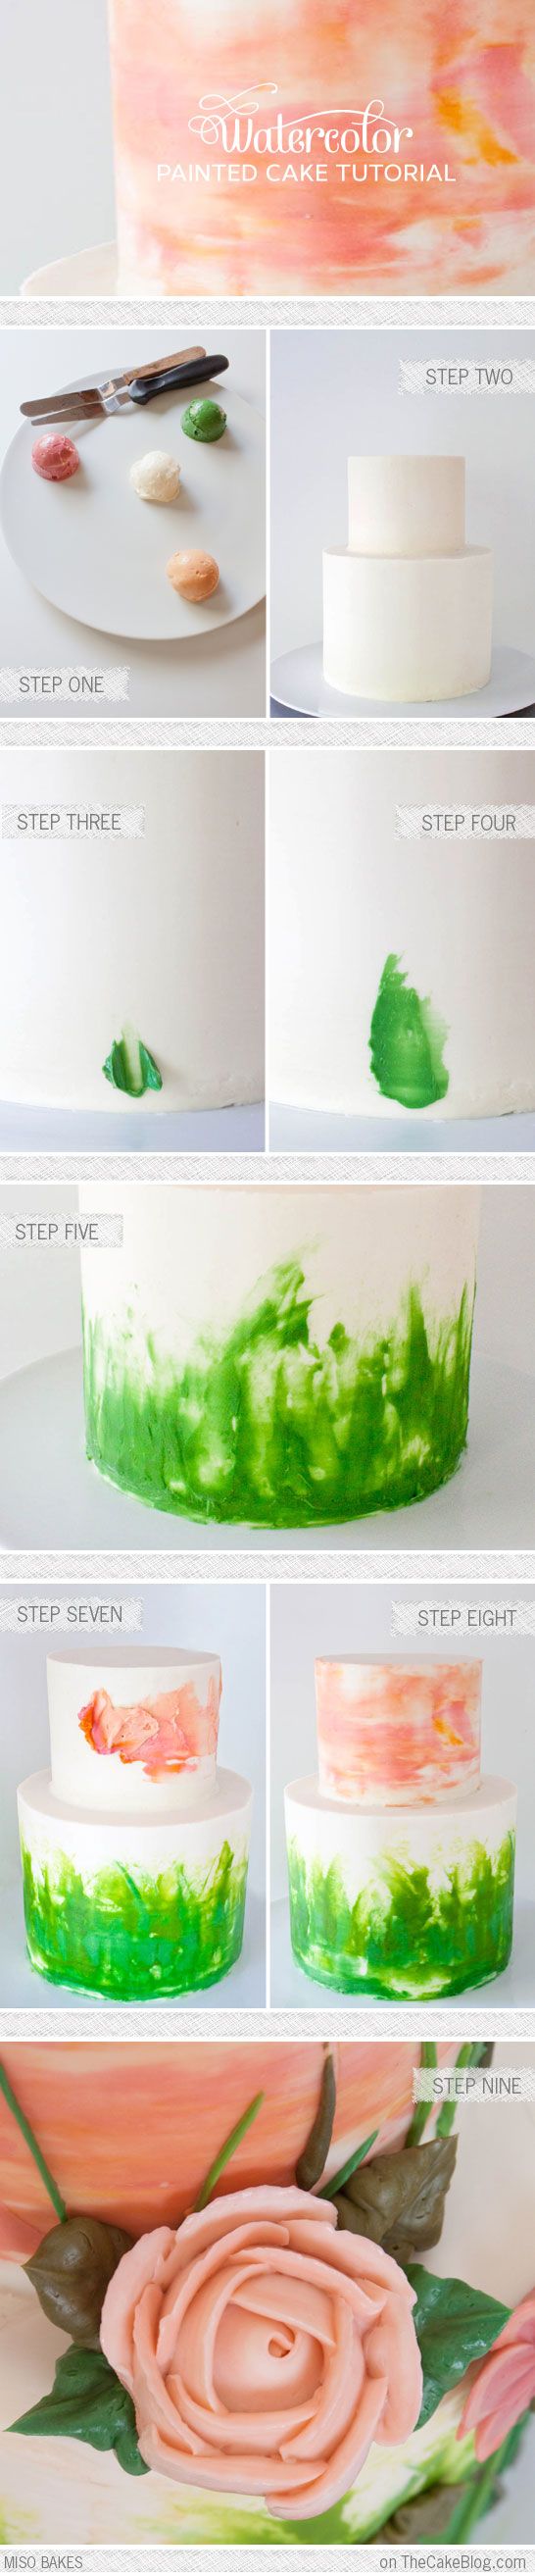 DIY Watercolor Cake Tutorial by Miso Bakes